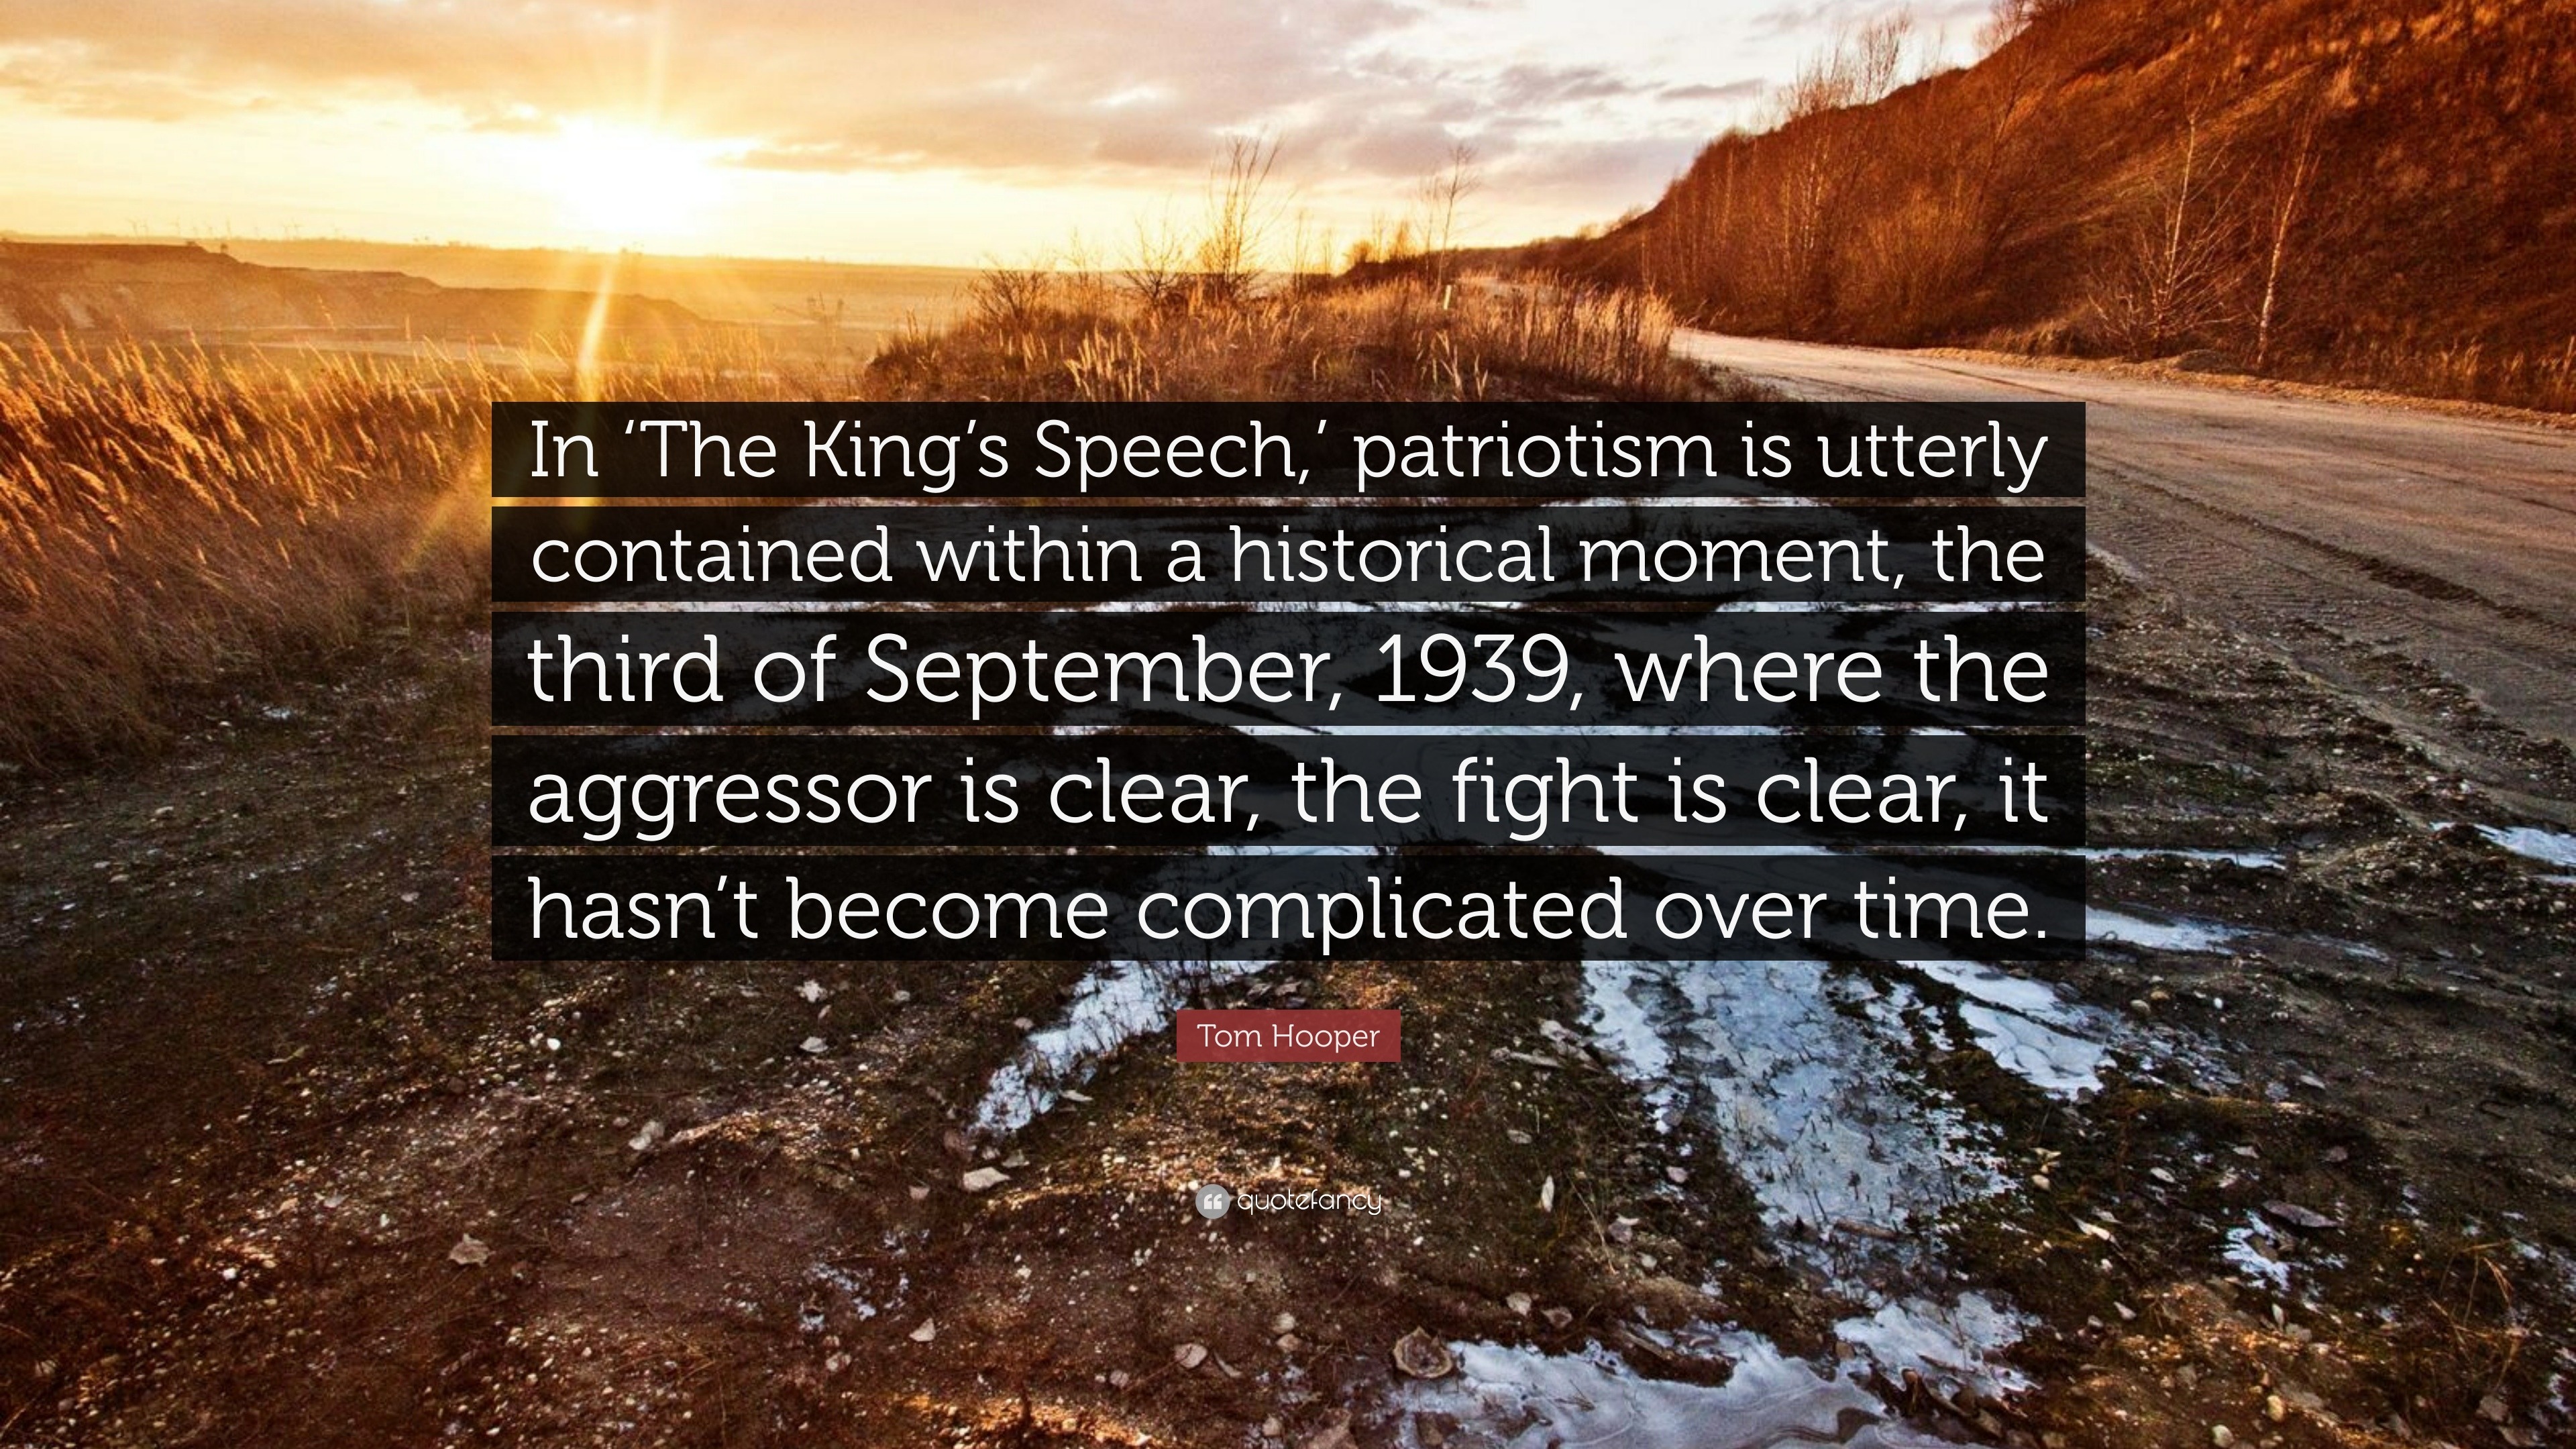 The King's Speech, 1939